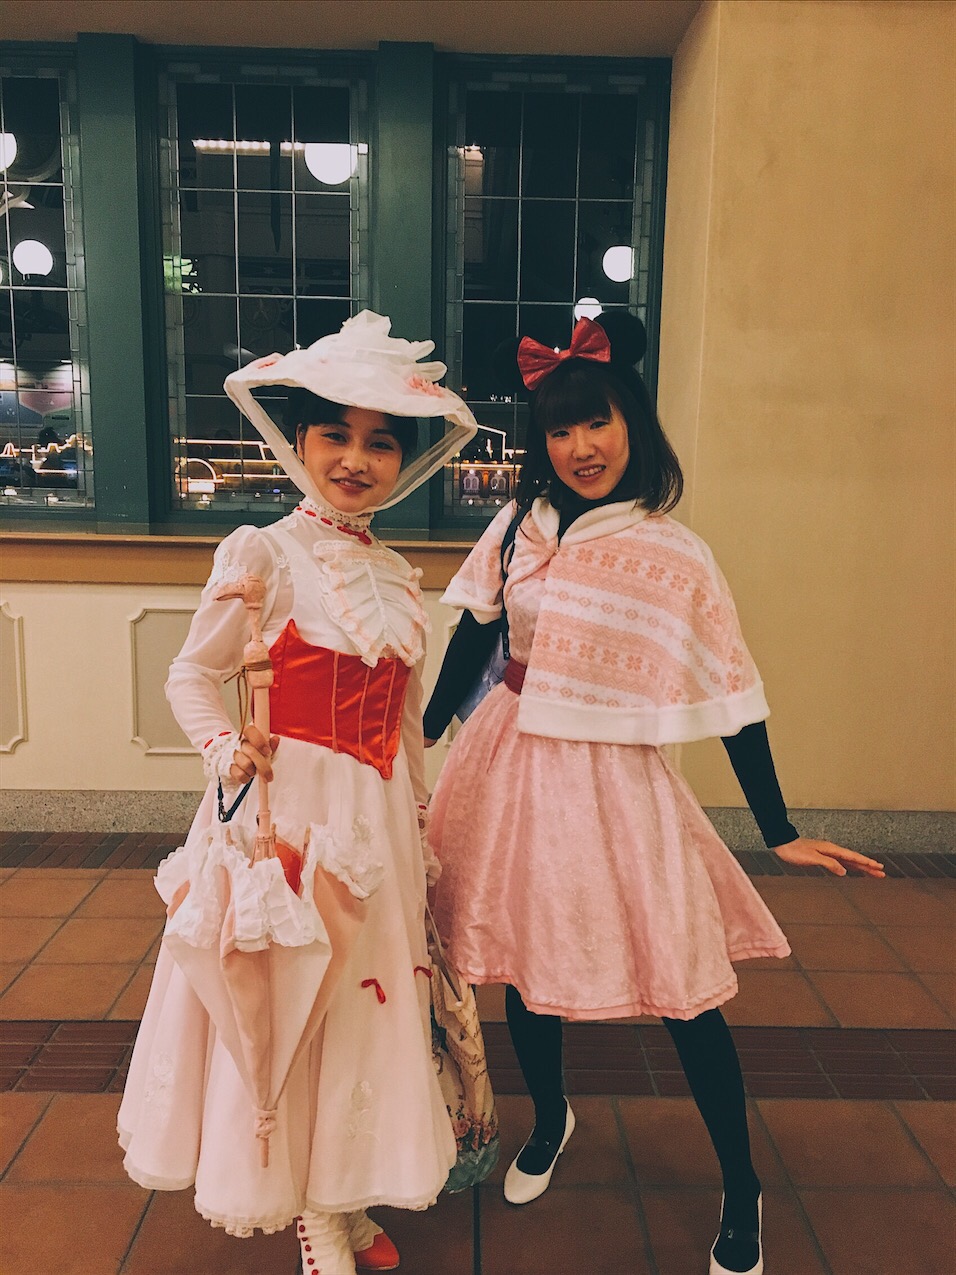 Tokyo Disneyland Halloween